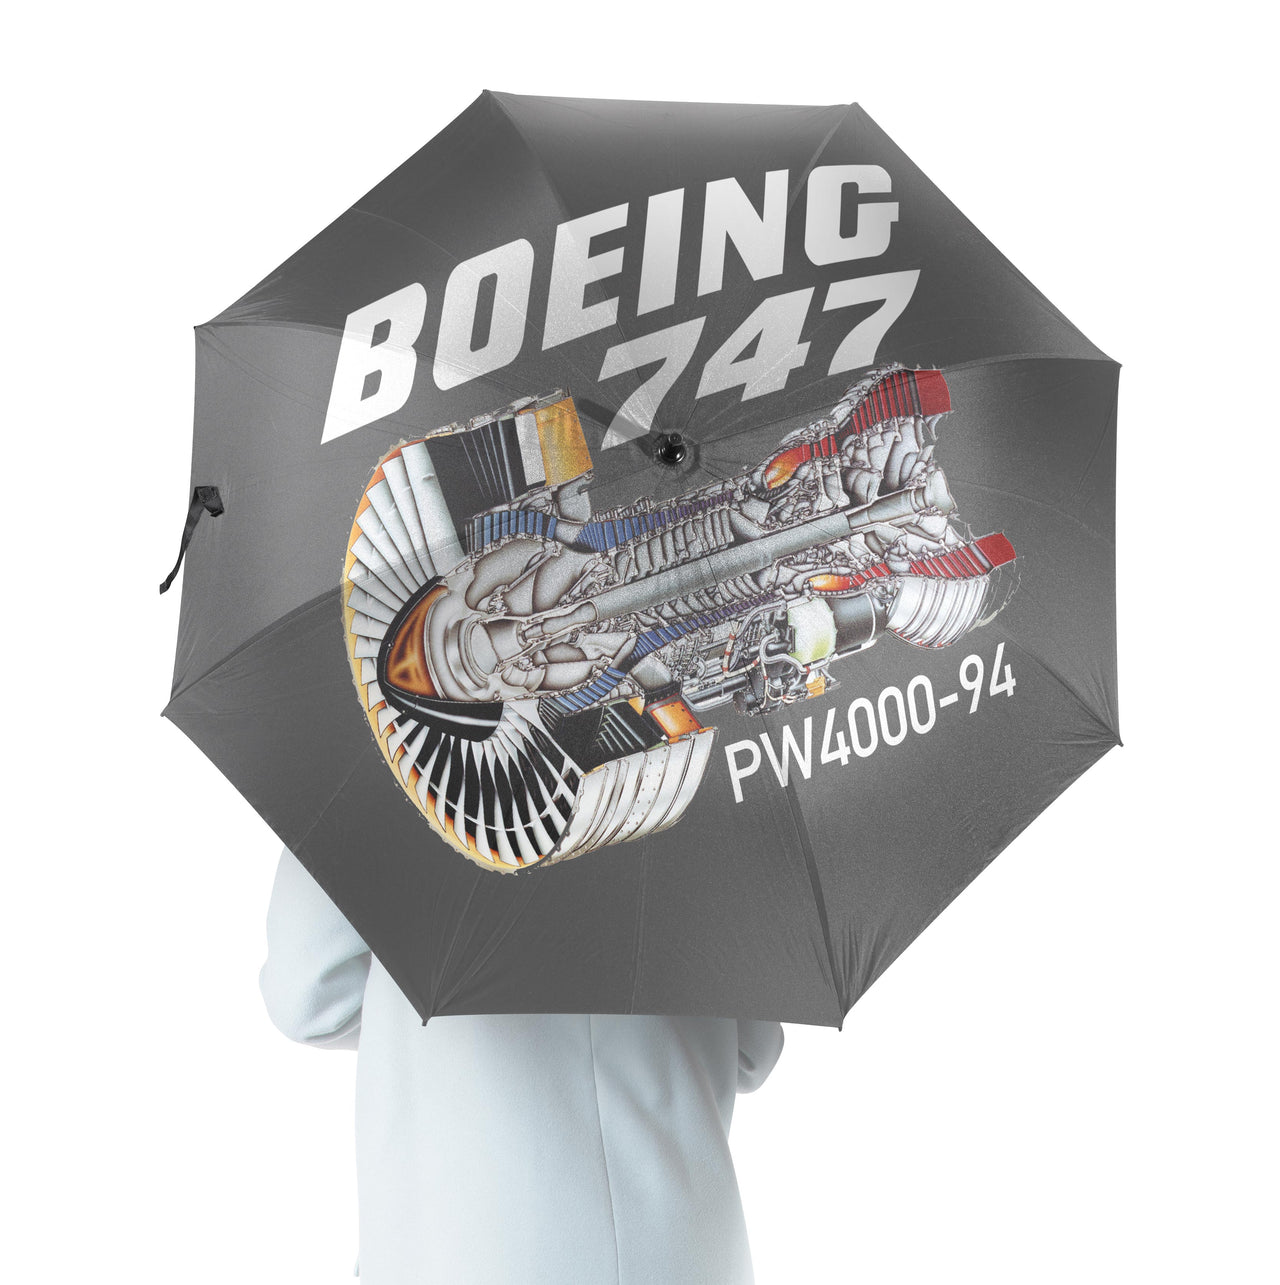 Boeing 747 & PW4000-94 Engine Designed Umbrella